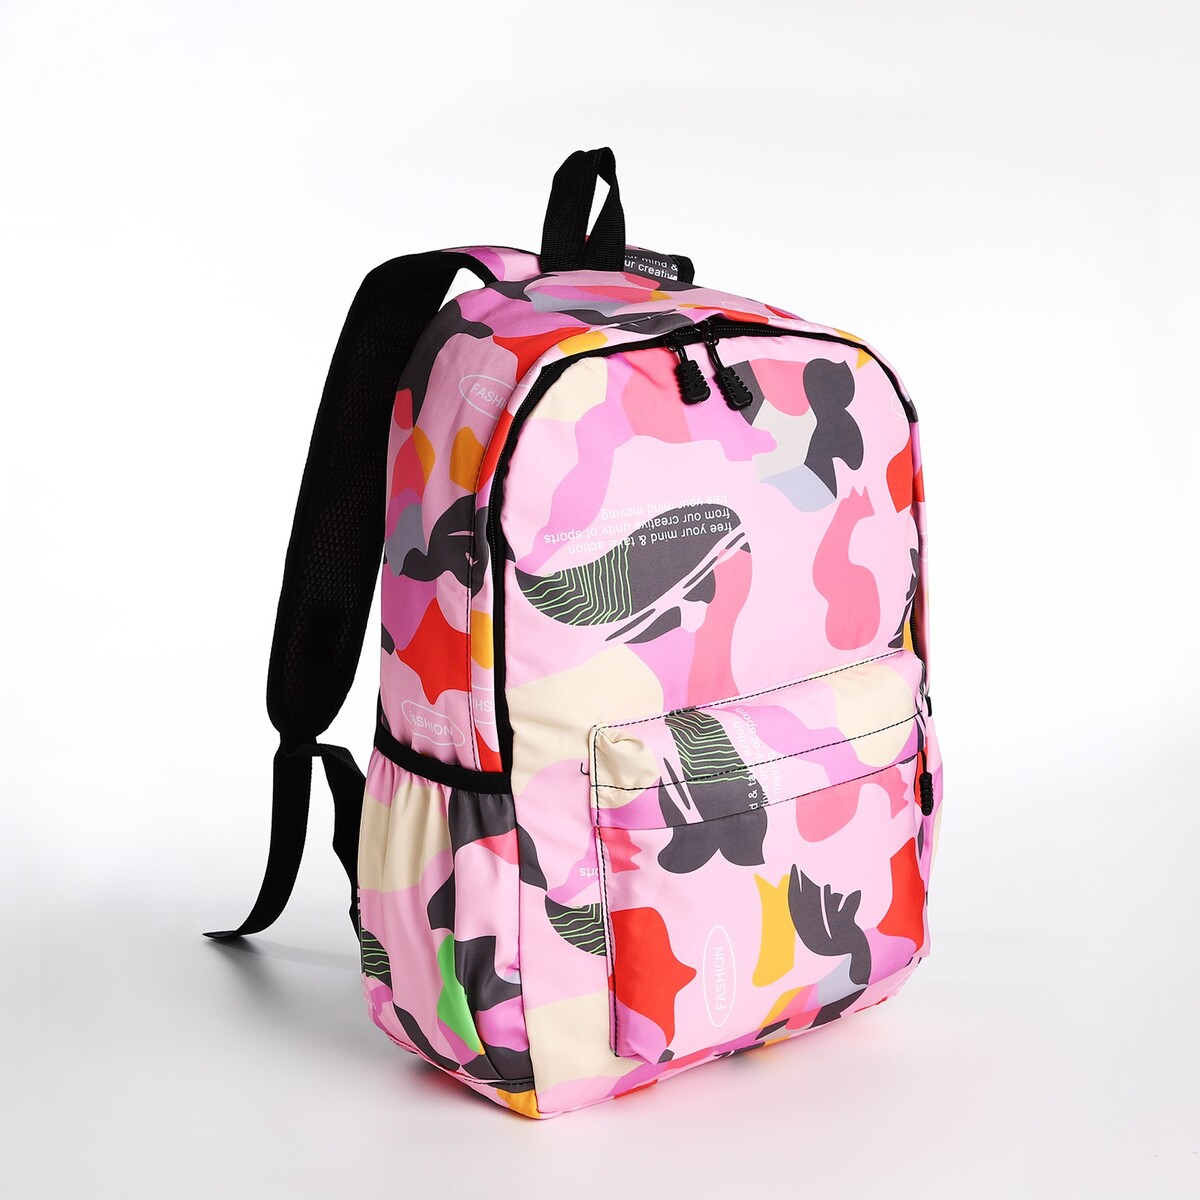 Рюкзак молодежный из текстиля, 3 кармана, цвет розовый рюкзак молодежный водонепроницаемый на молнии 3 кармана голубой розовый